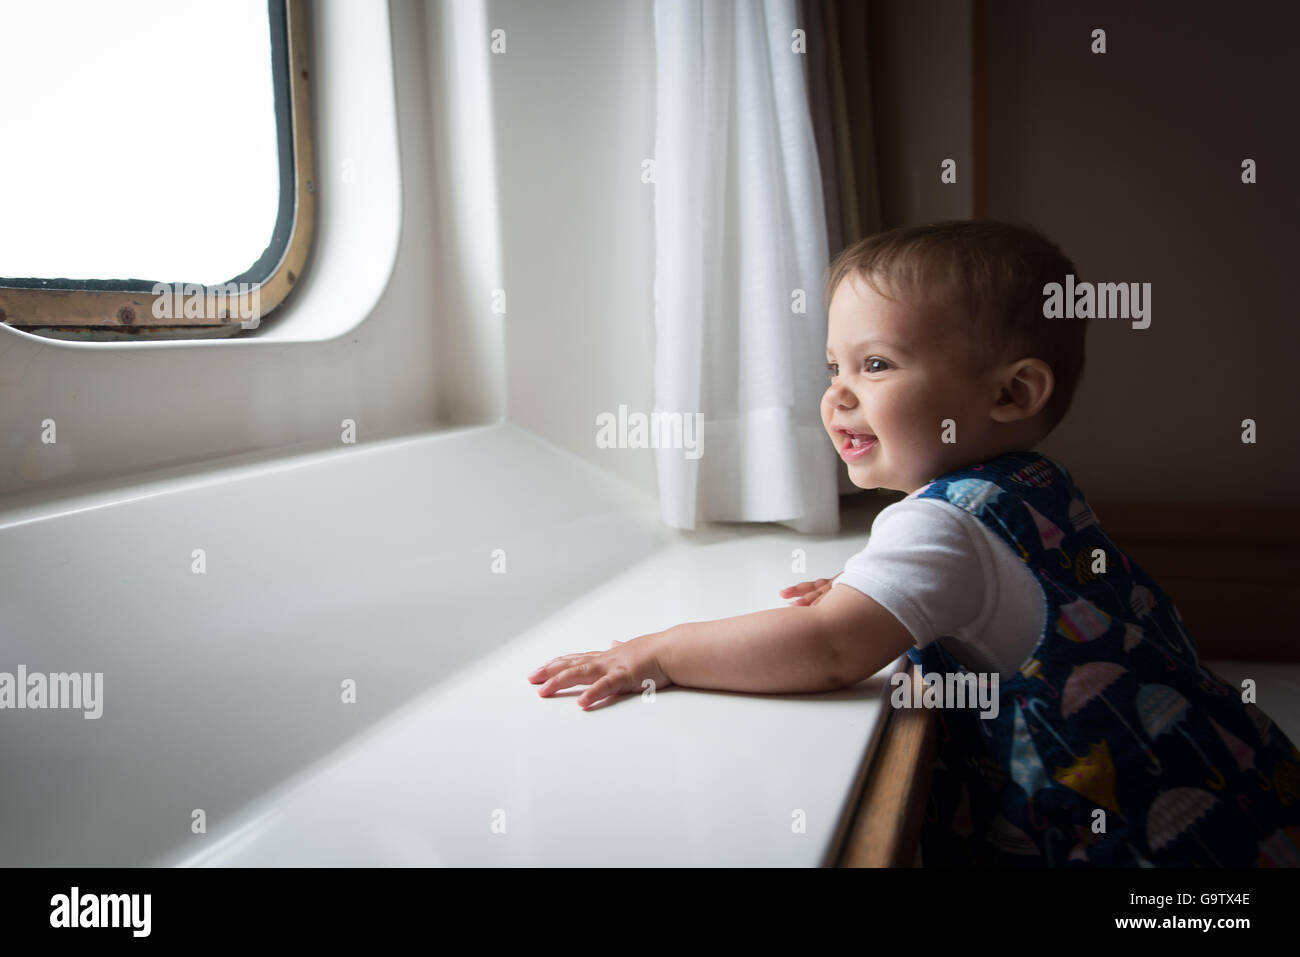 Bébé à la recherche d'une fenêtre hublot à bord d'un ferry Banque D'Images